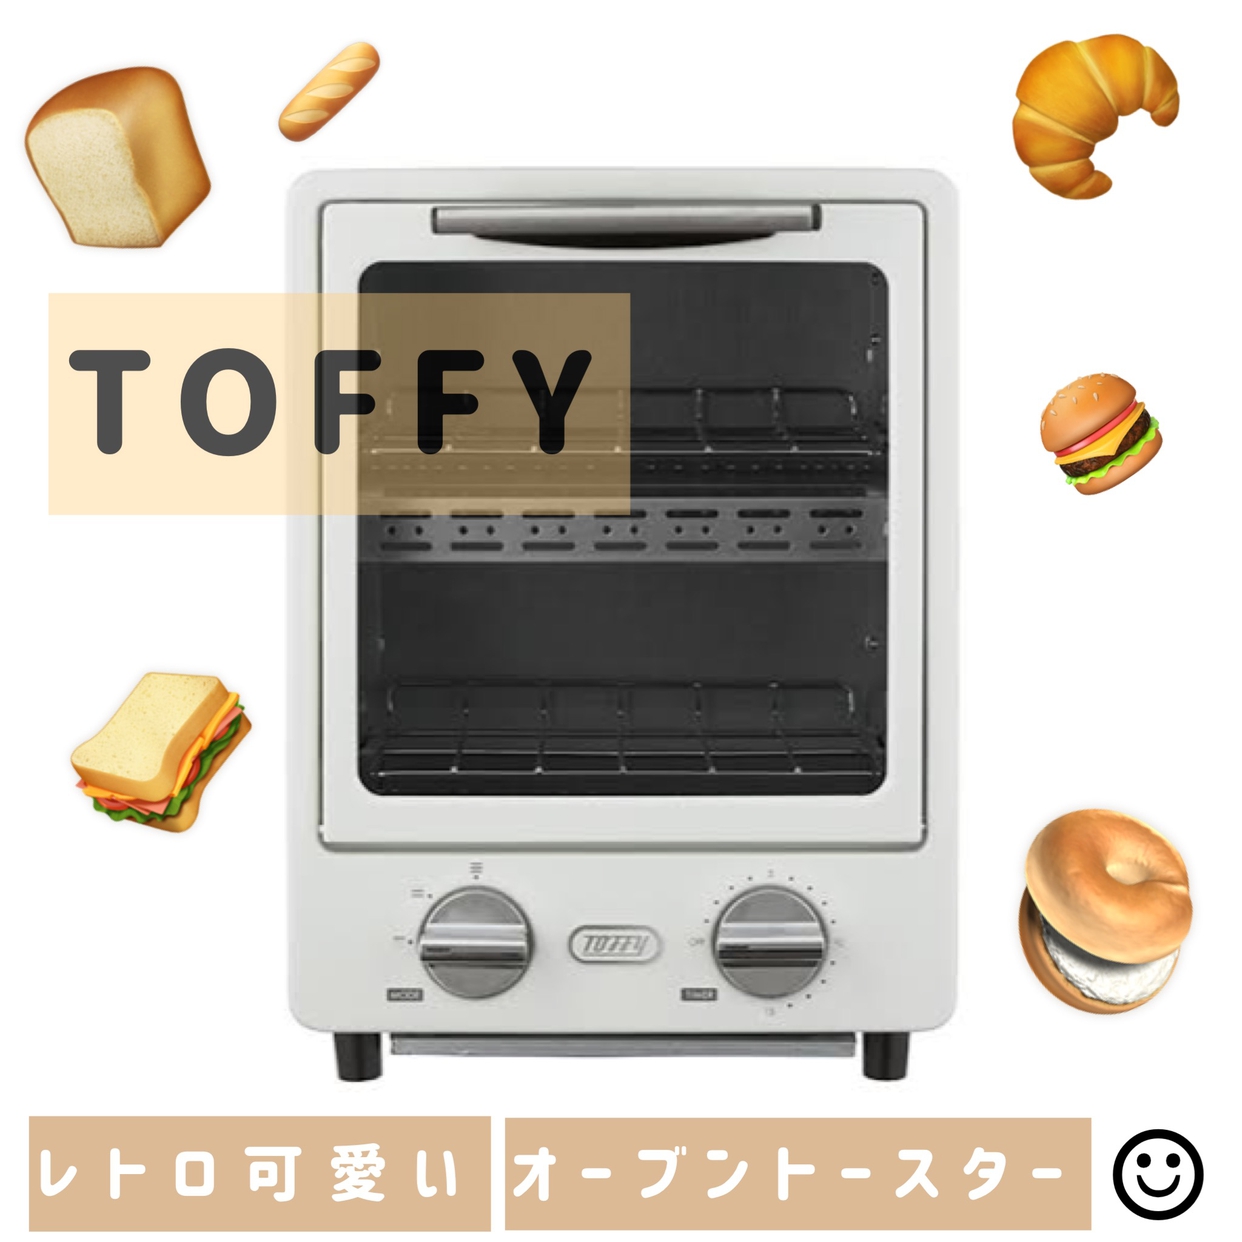 Toffy(トフィー) オーブントースター K-TS1に関するくららさんの口コミ画像1